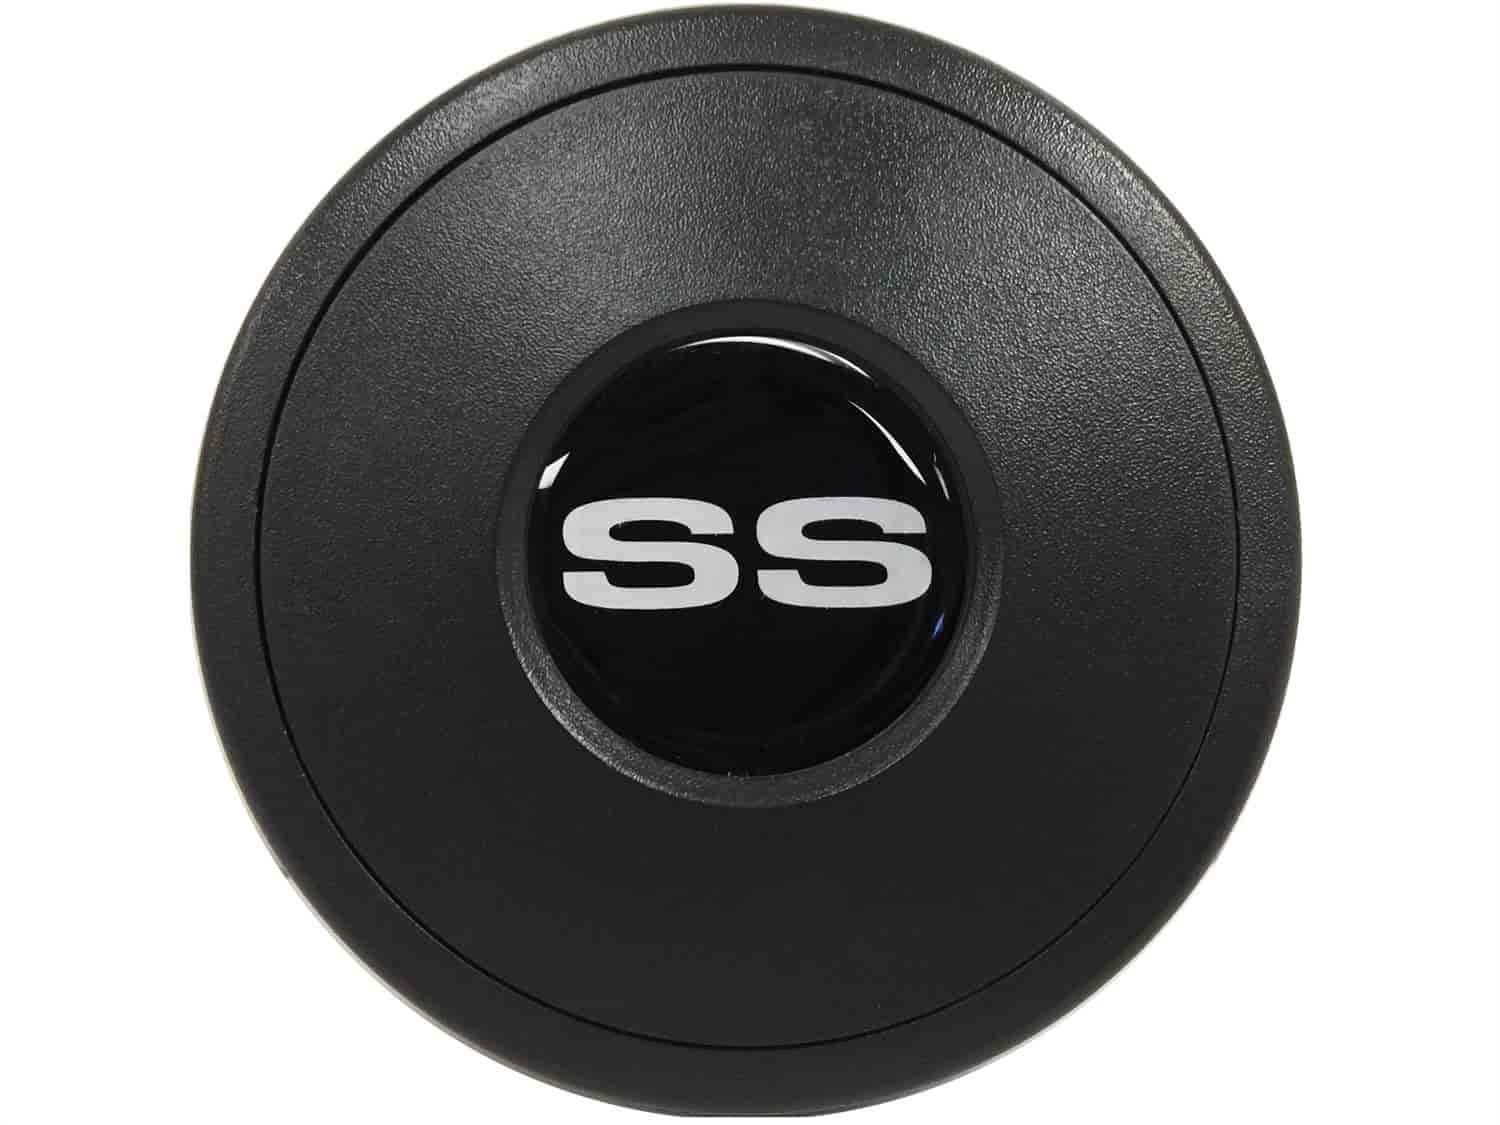 Horn Button Silver Chevy 'SS' Super Sport Emblem